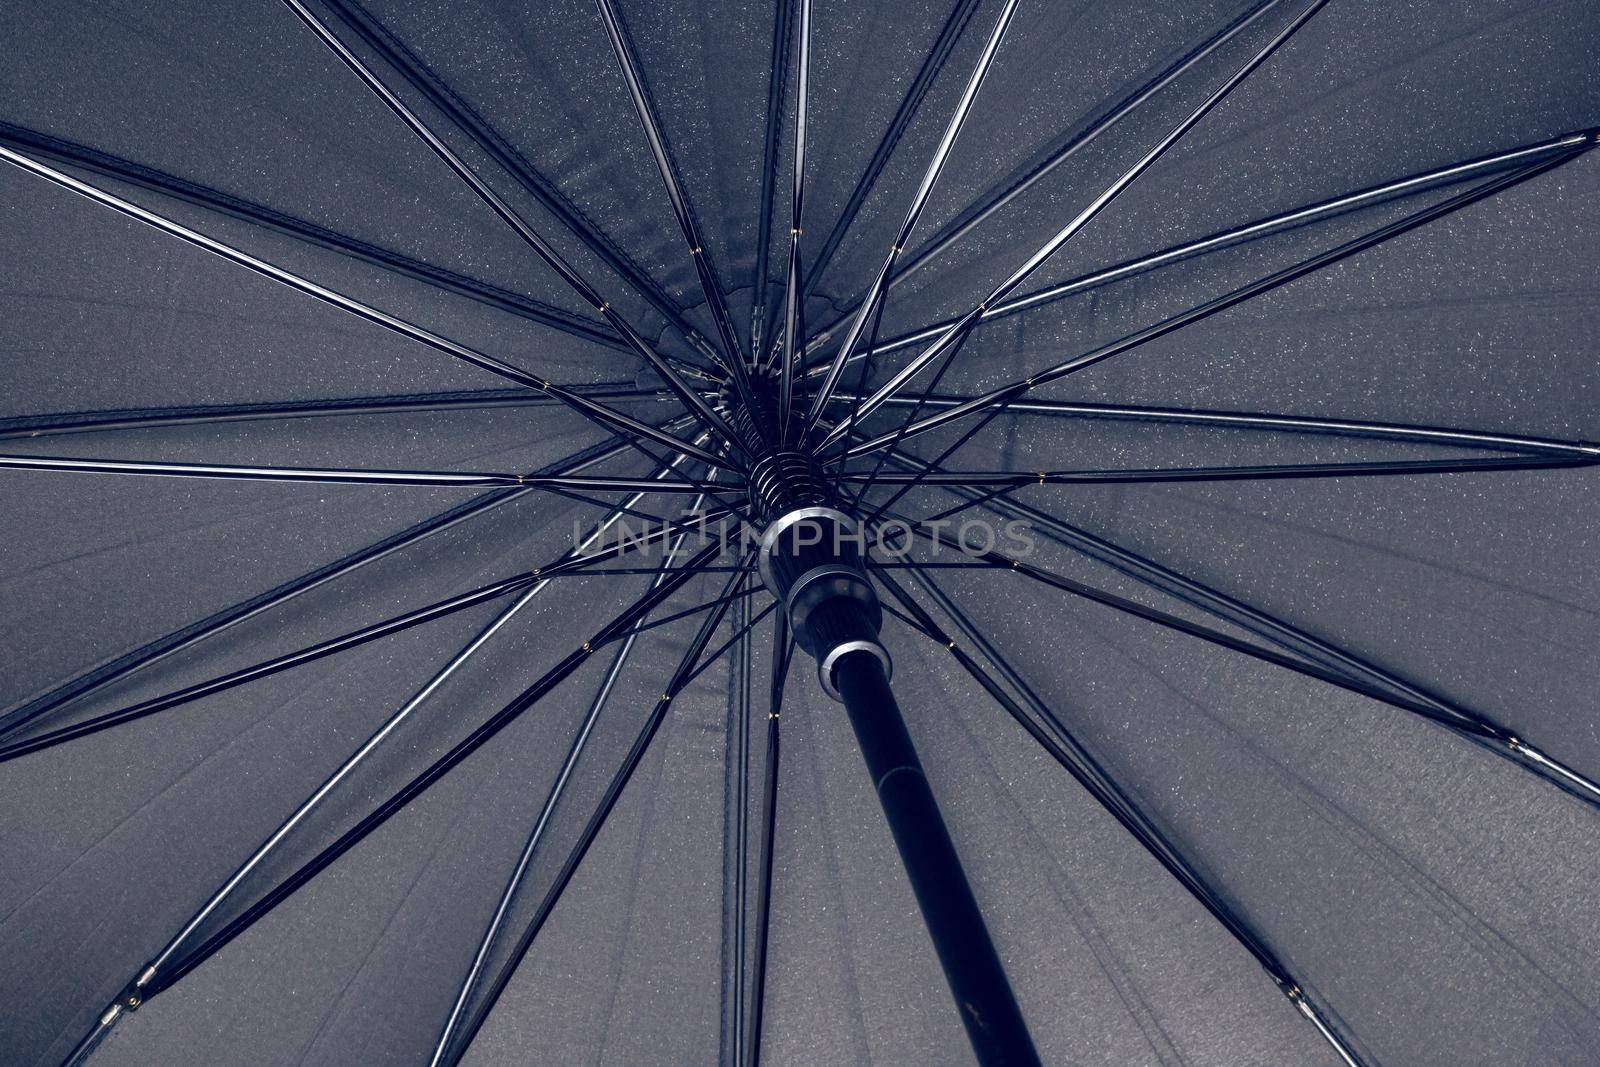 Big black umbrella bottom view close up, with copy space